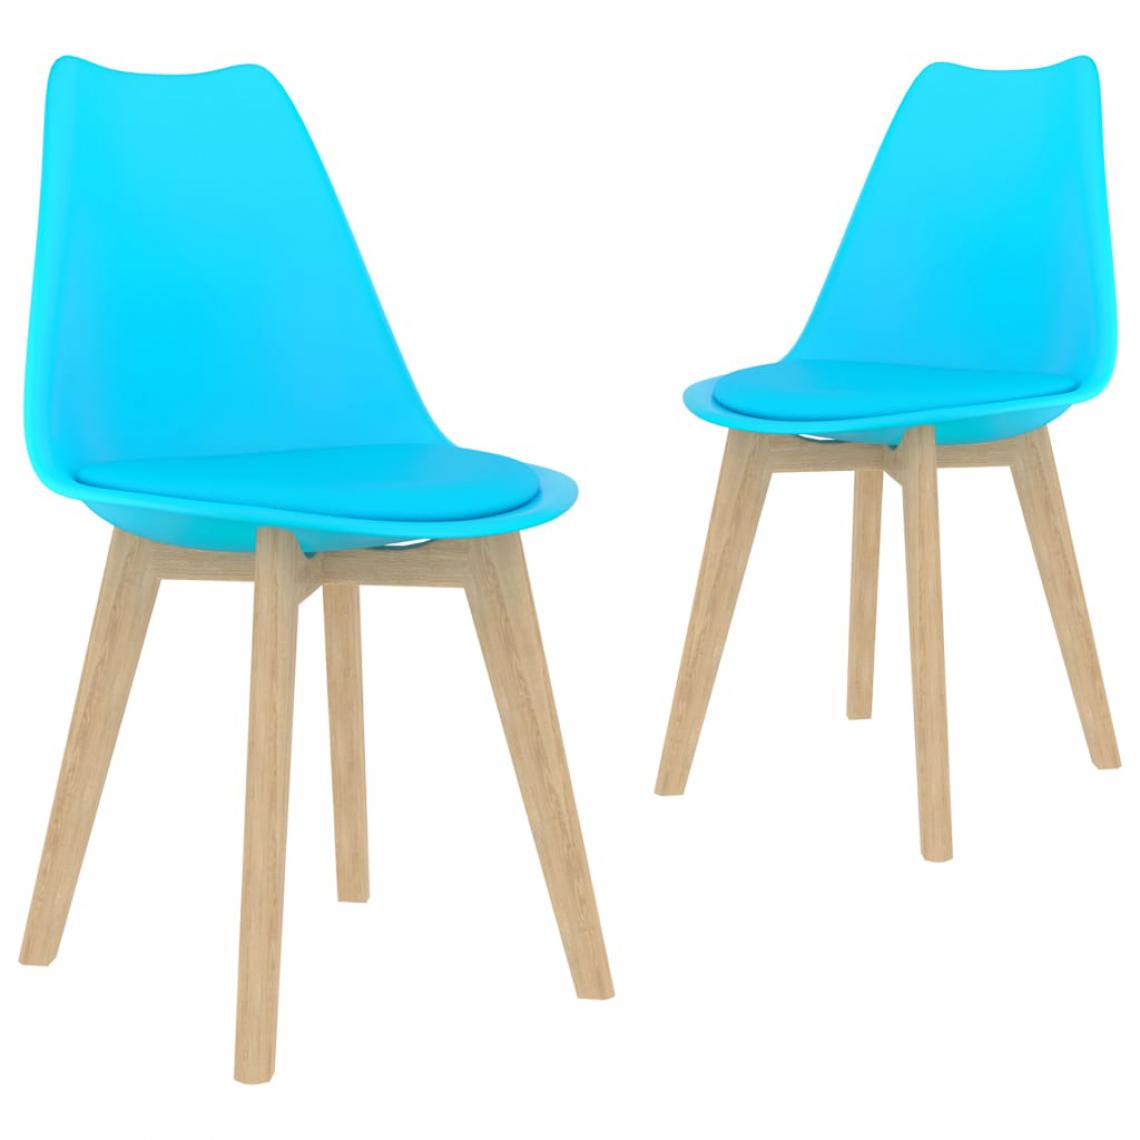 Chunhelife - Chunhelife Chaises de salle à manger 2 pcs Bleu Plastique - Chaises